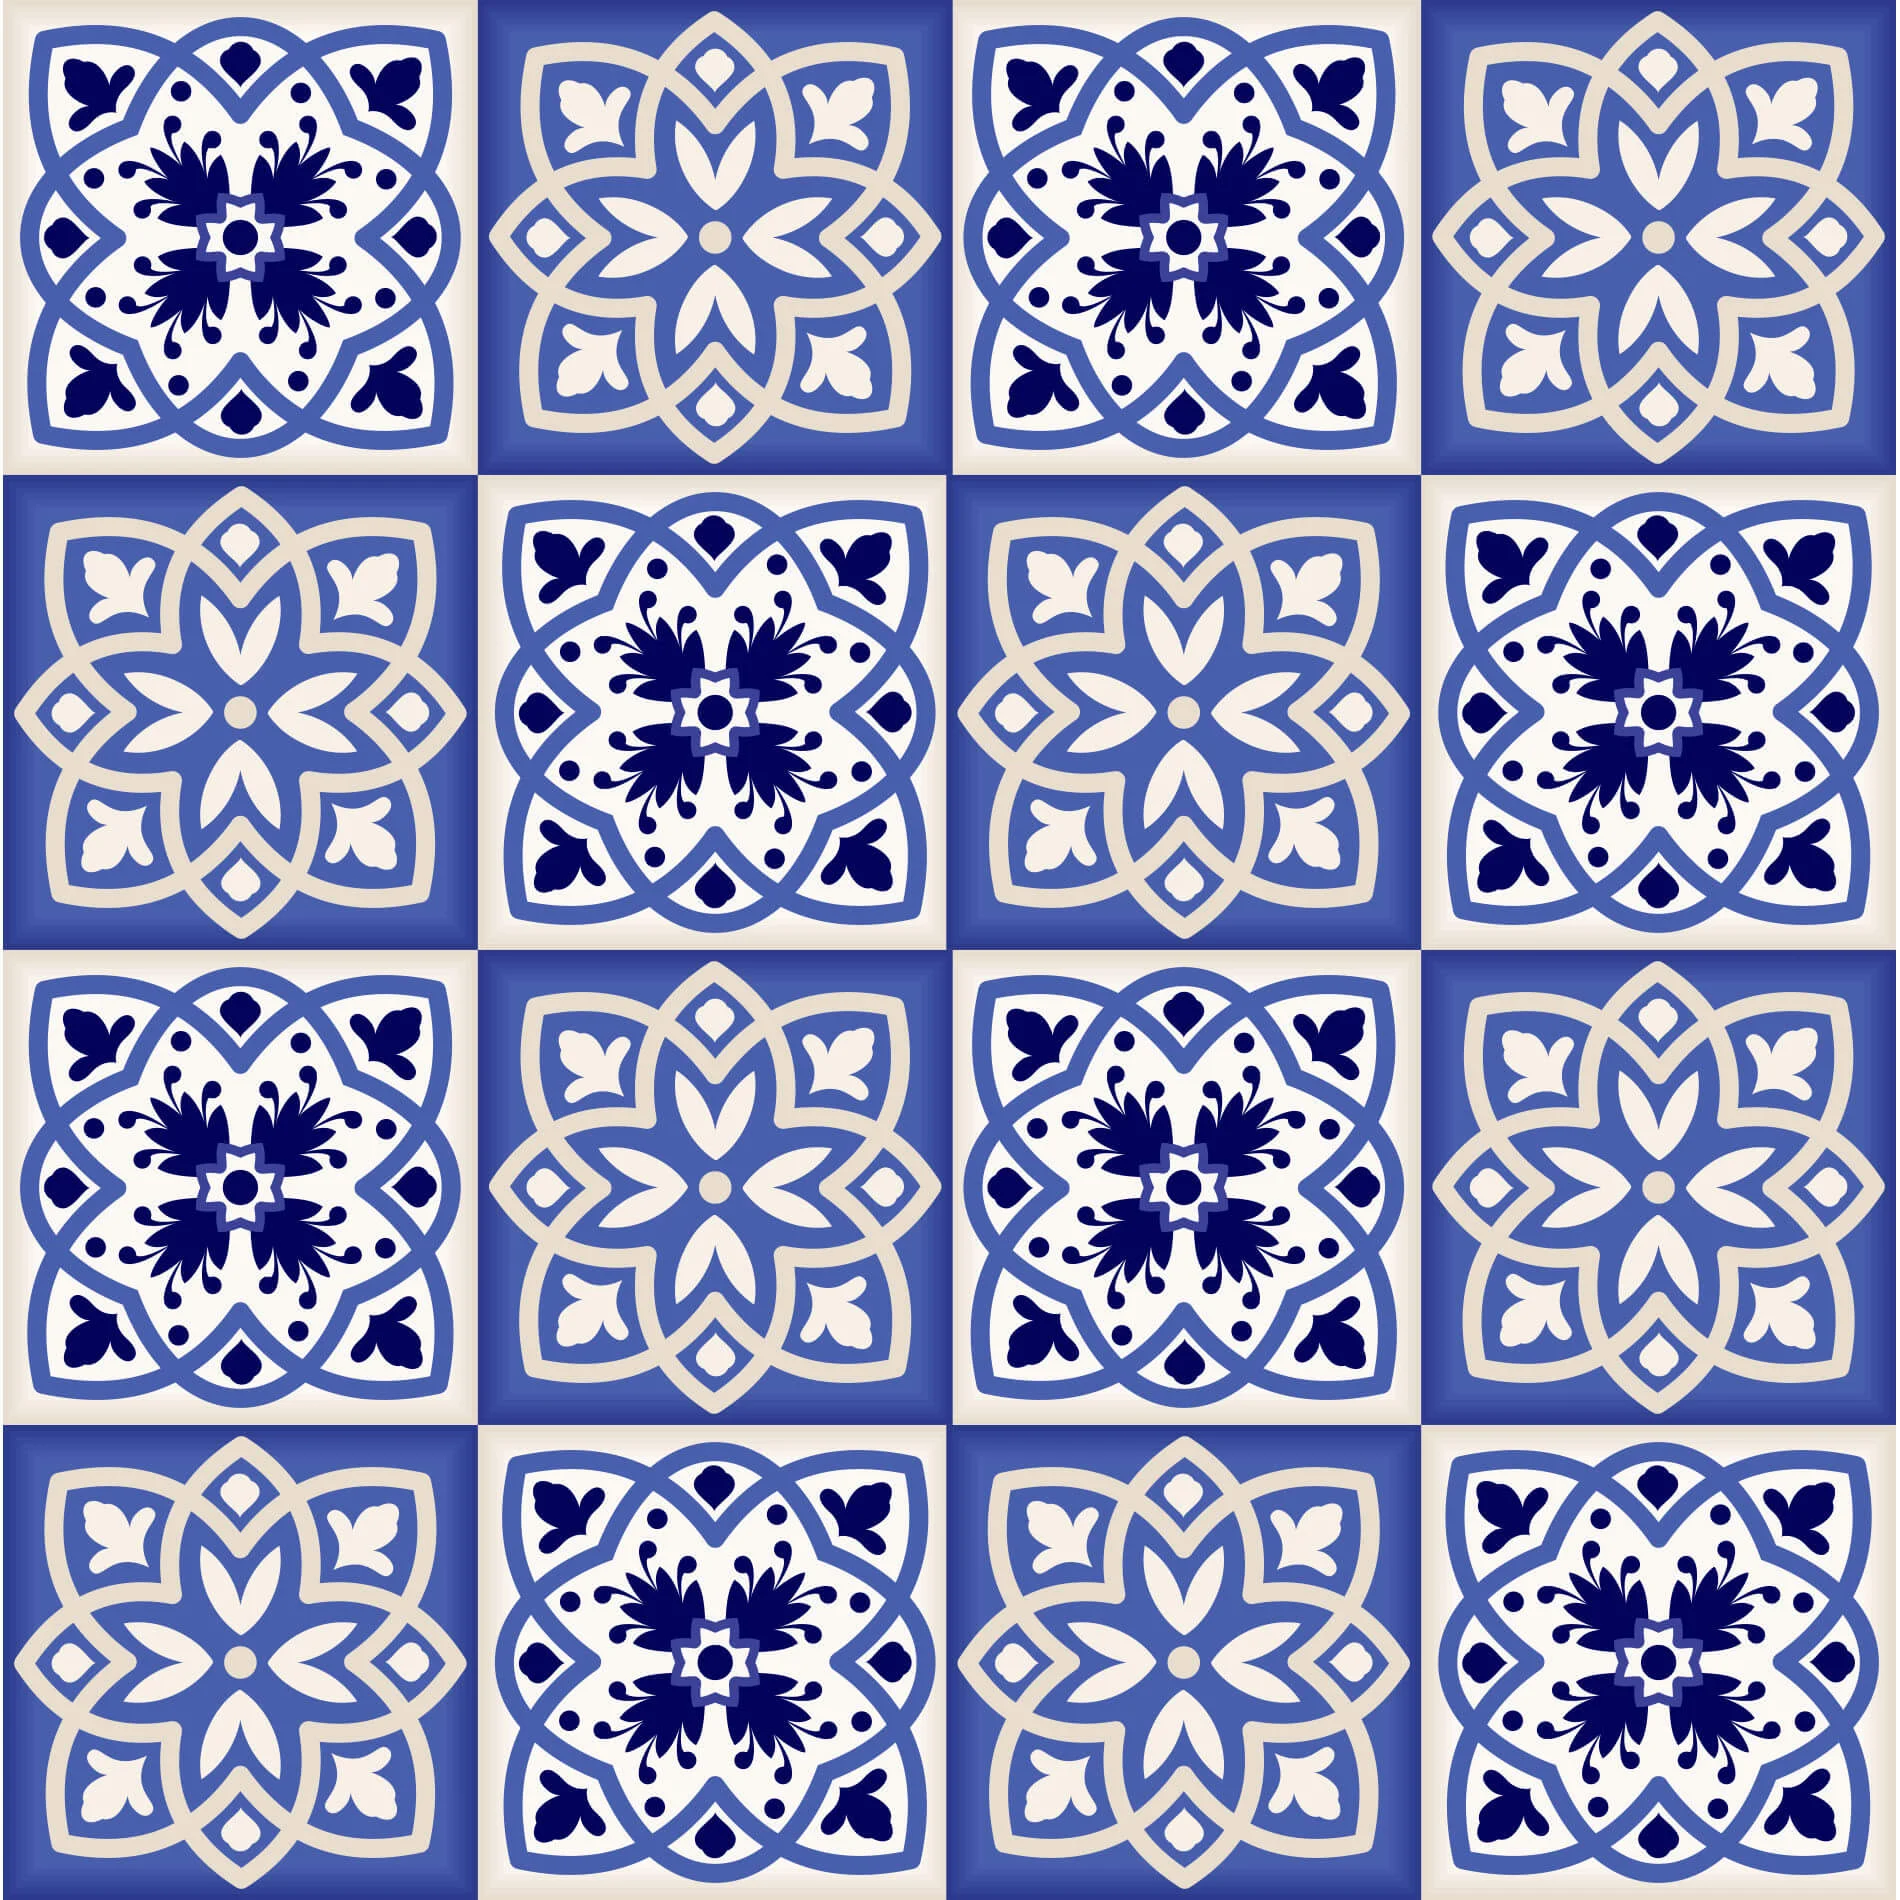 Adesivo de Azulejo para Cozinha Azul Vila Real Português